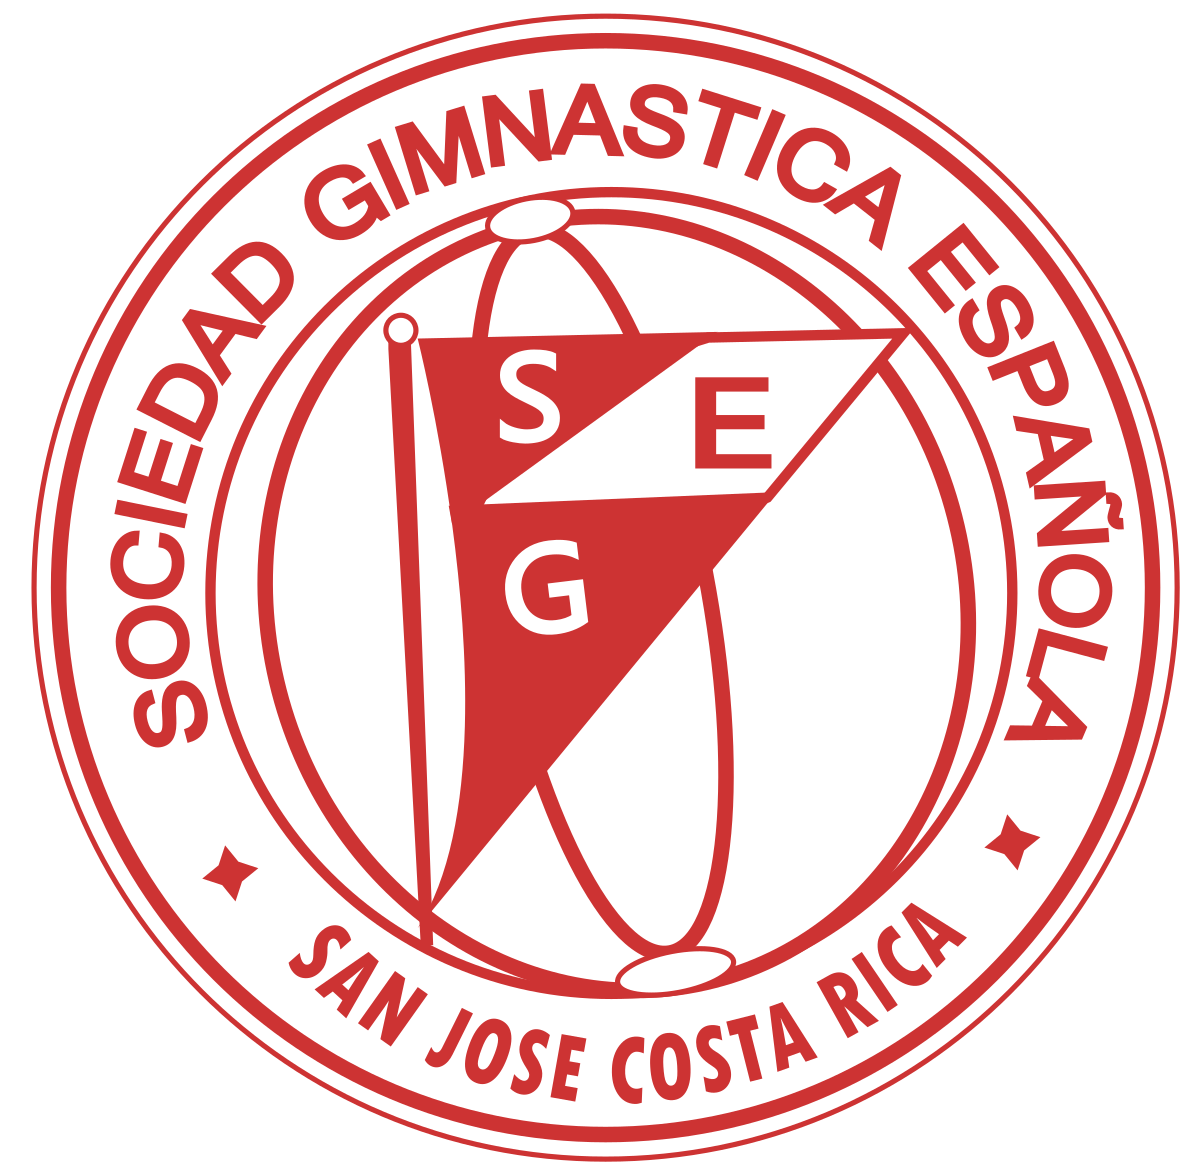 Este es el logo con el que aún se recuerda a la Sociedad Gimnástica Española. Foto: WikiCommons